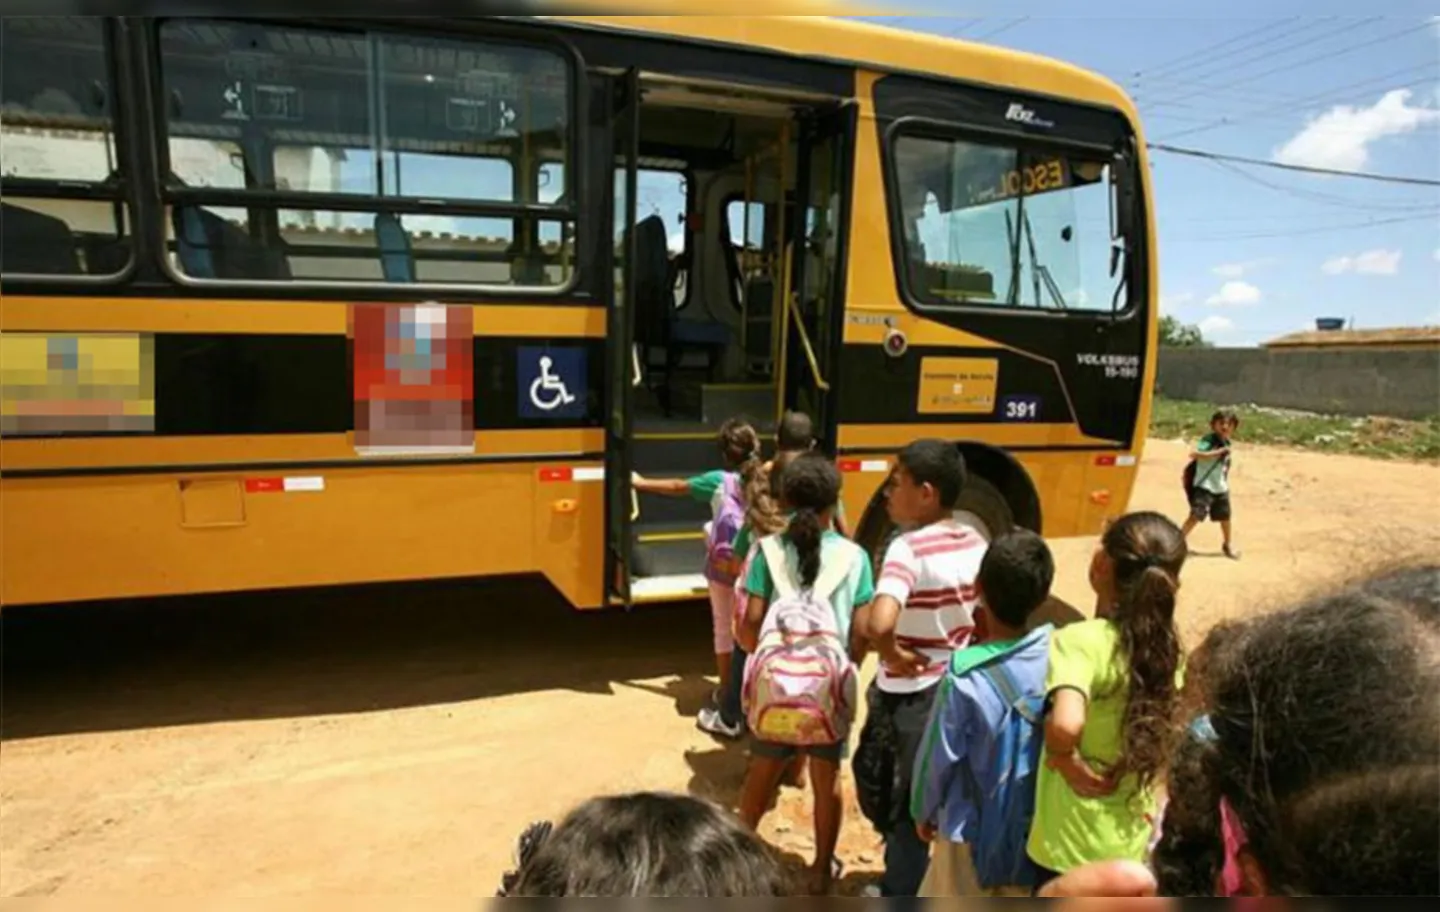 Foram identificadas irregularidades na licitação do transporte escolar | Foto: Joá Souza | Ag. A TARDE